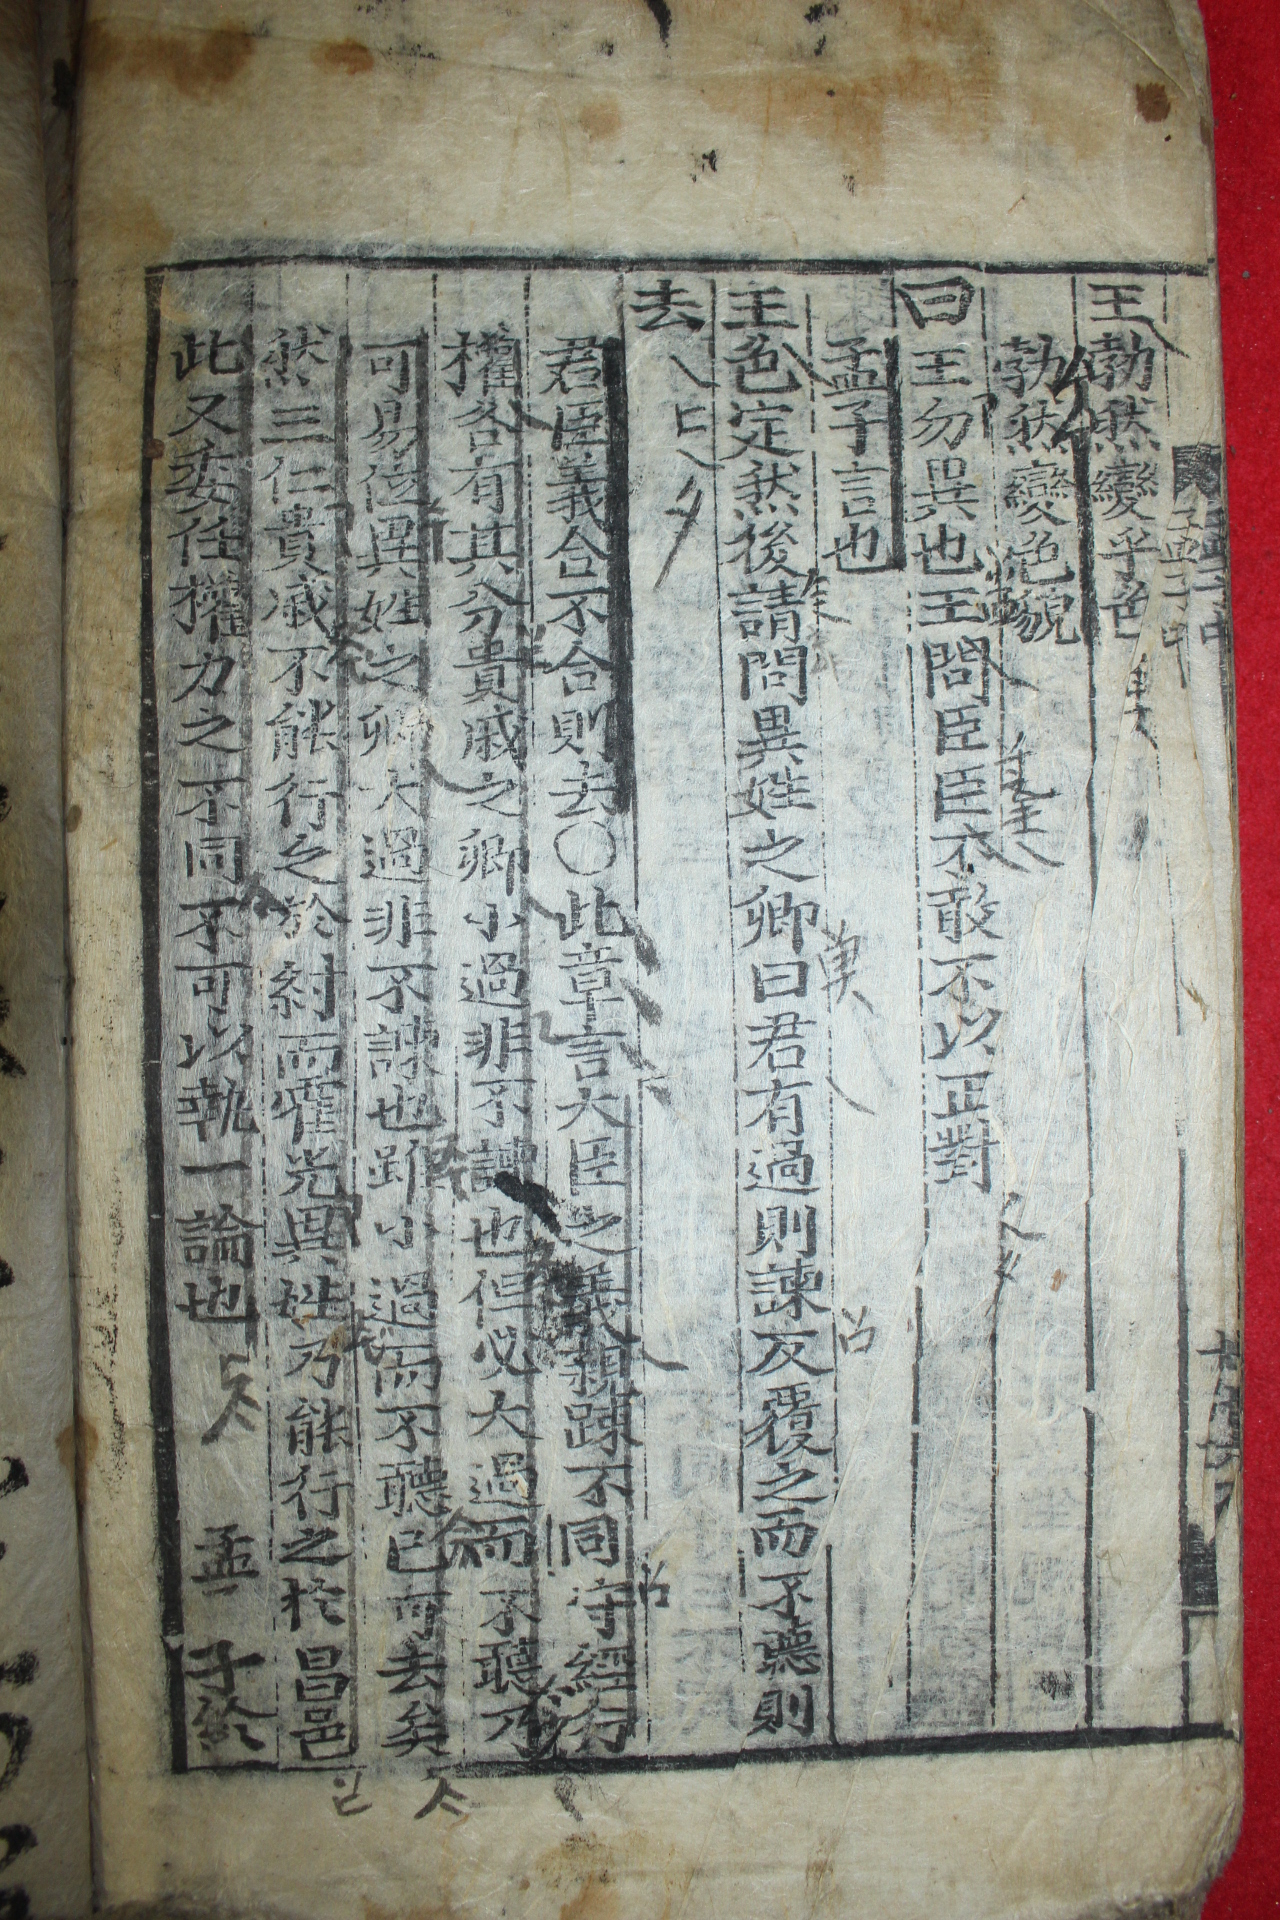 1600년대 희귀고목판본 맹자(孟子) 중권 1책